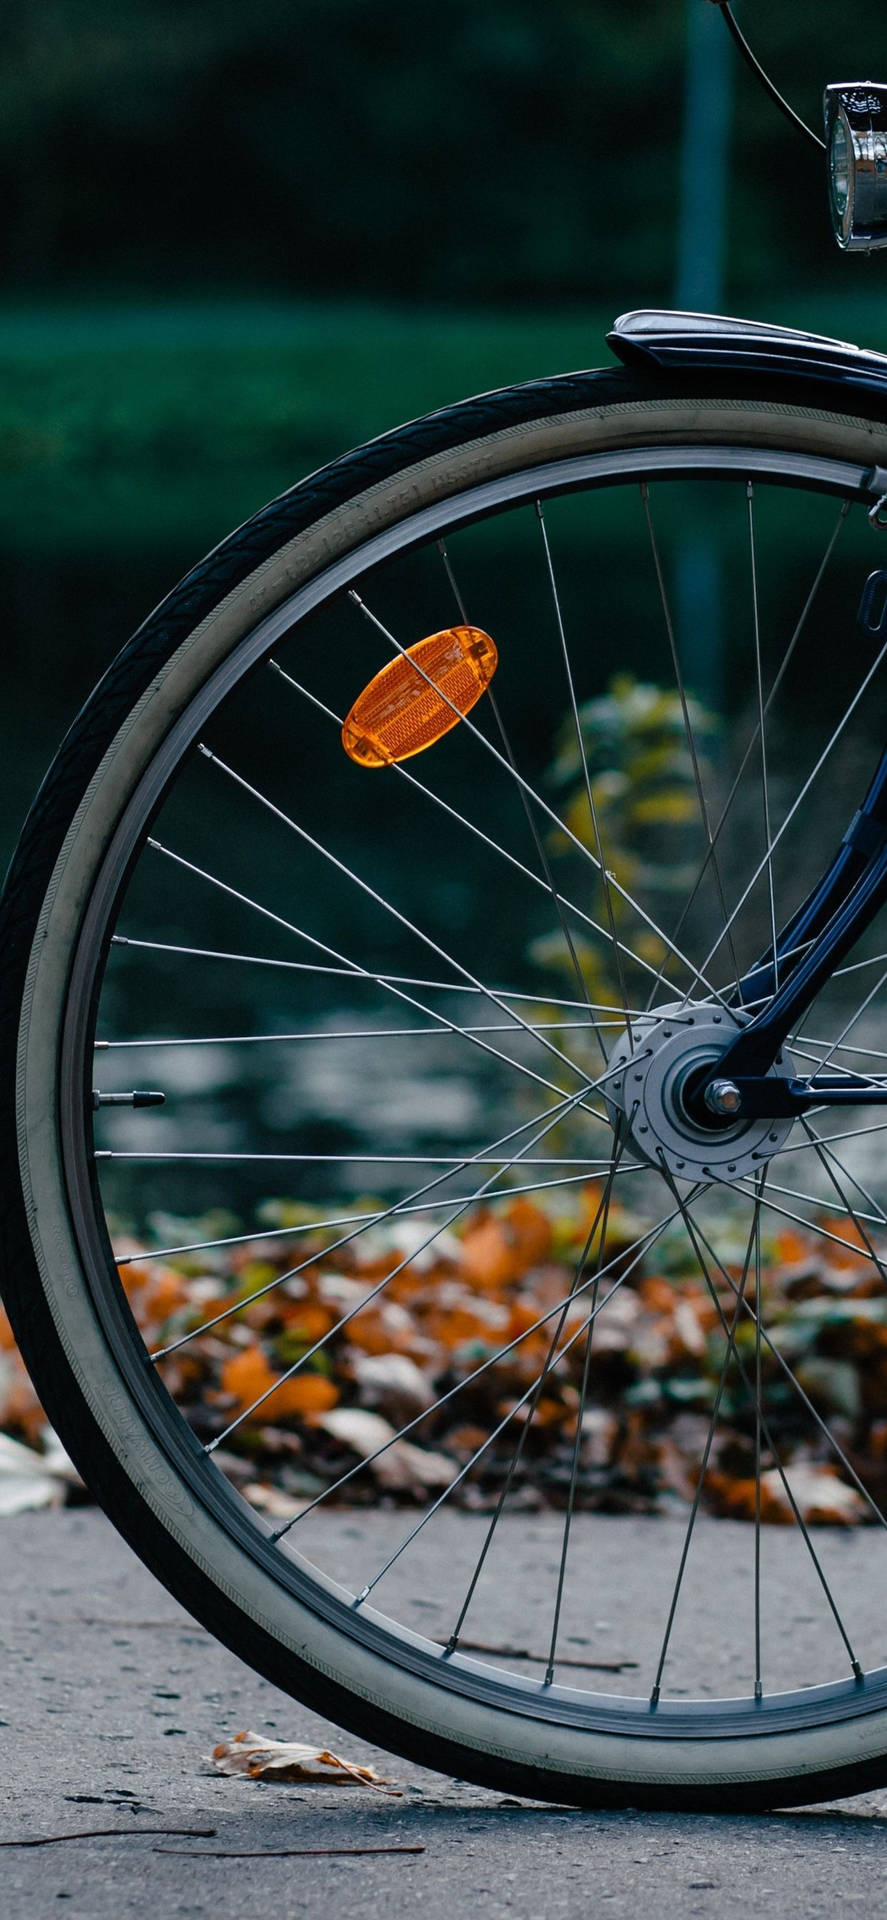 Fascinating Bicycle Iphone Wheel Bokeh Shot Background